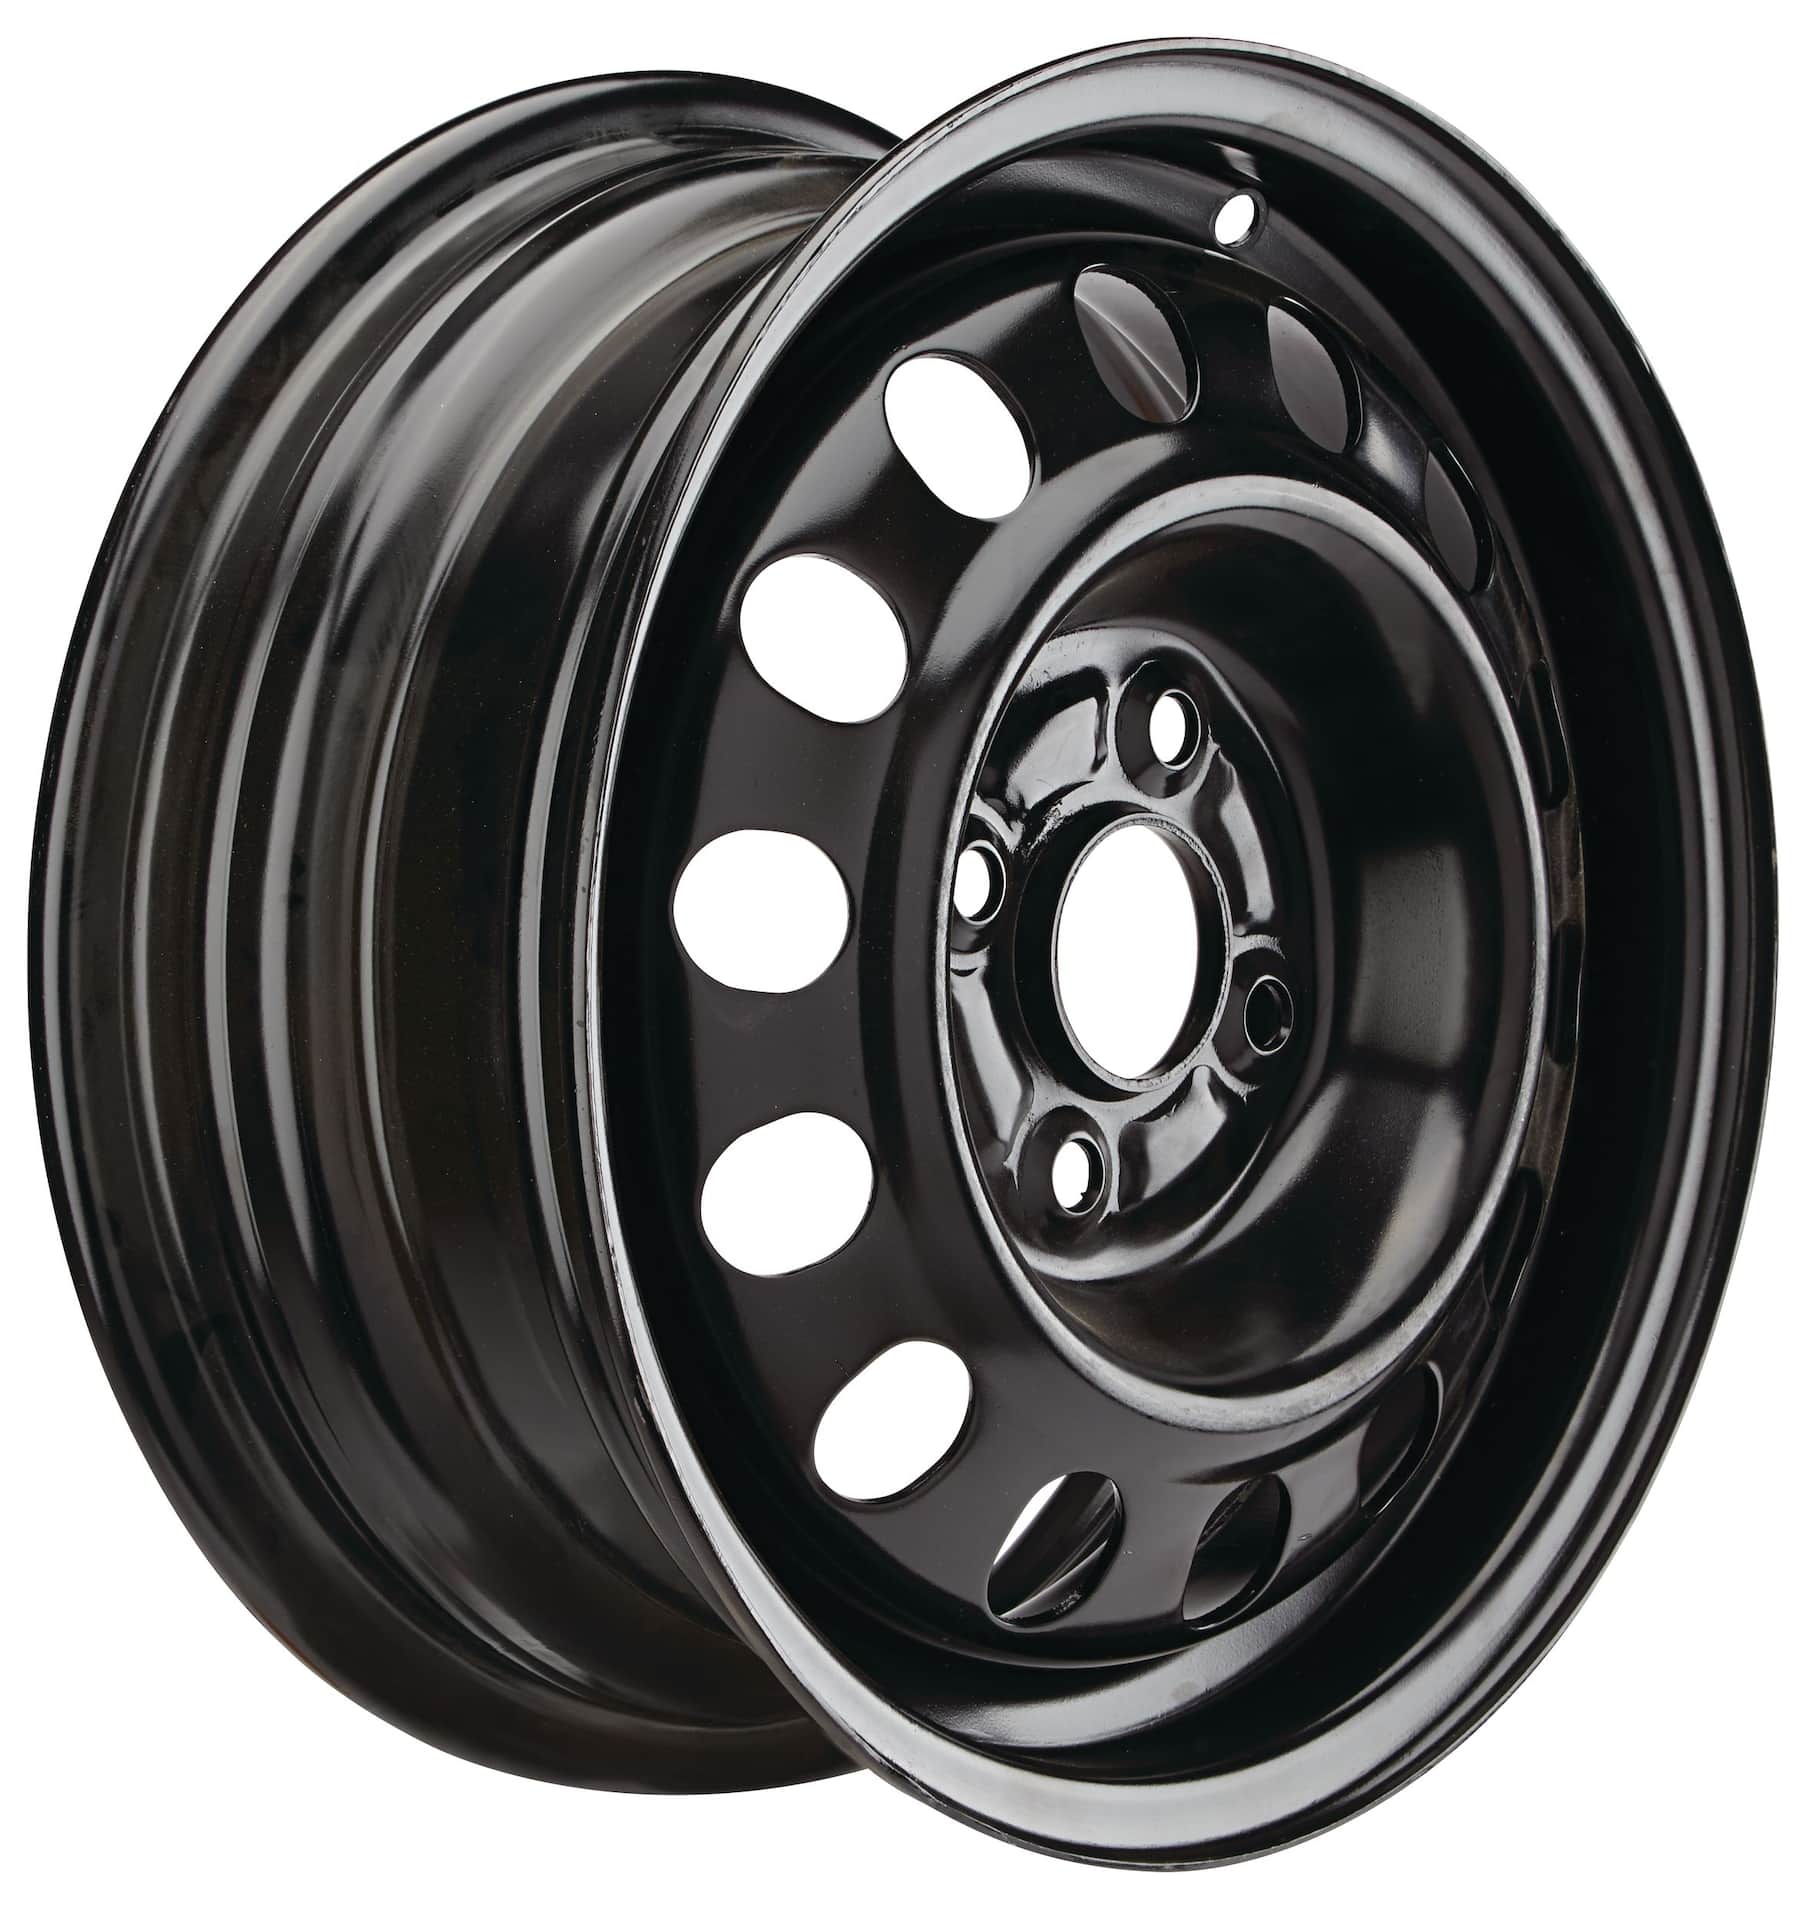 Macpek Steel Wheel/Rim, Black Canadian Tire